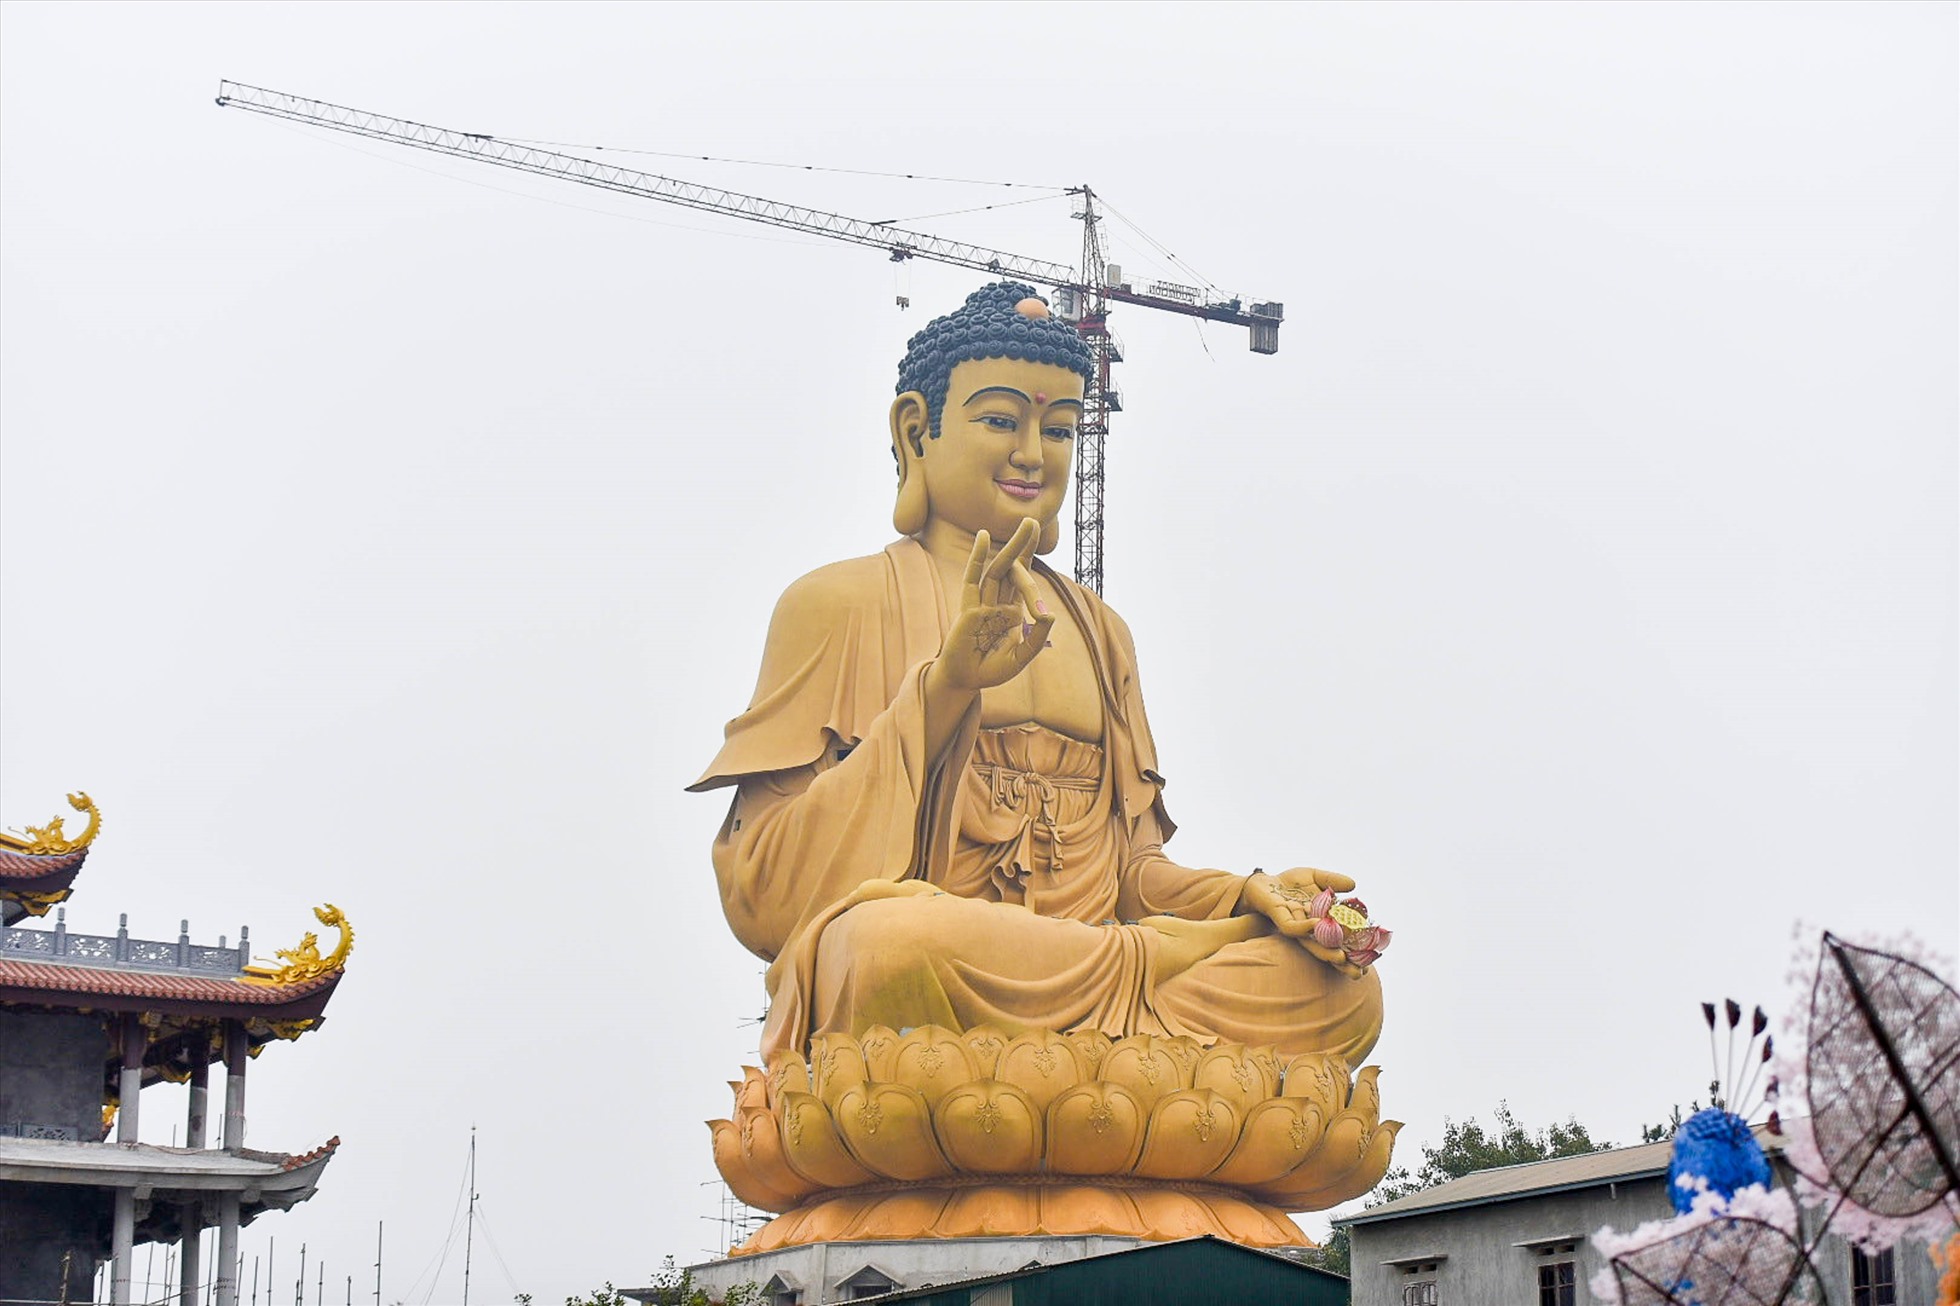 Ngôi chùa có tượng Phật cao 72m, trái tim ngọc nặng 1 tấn ở Hà Nội